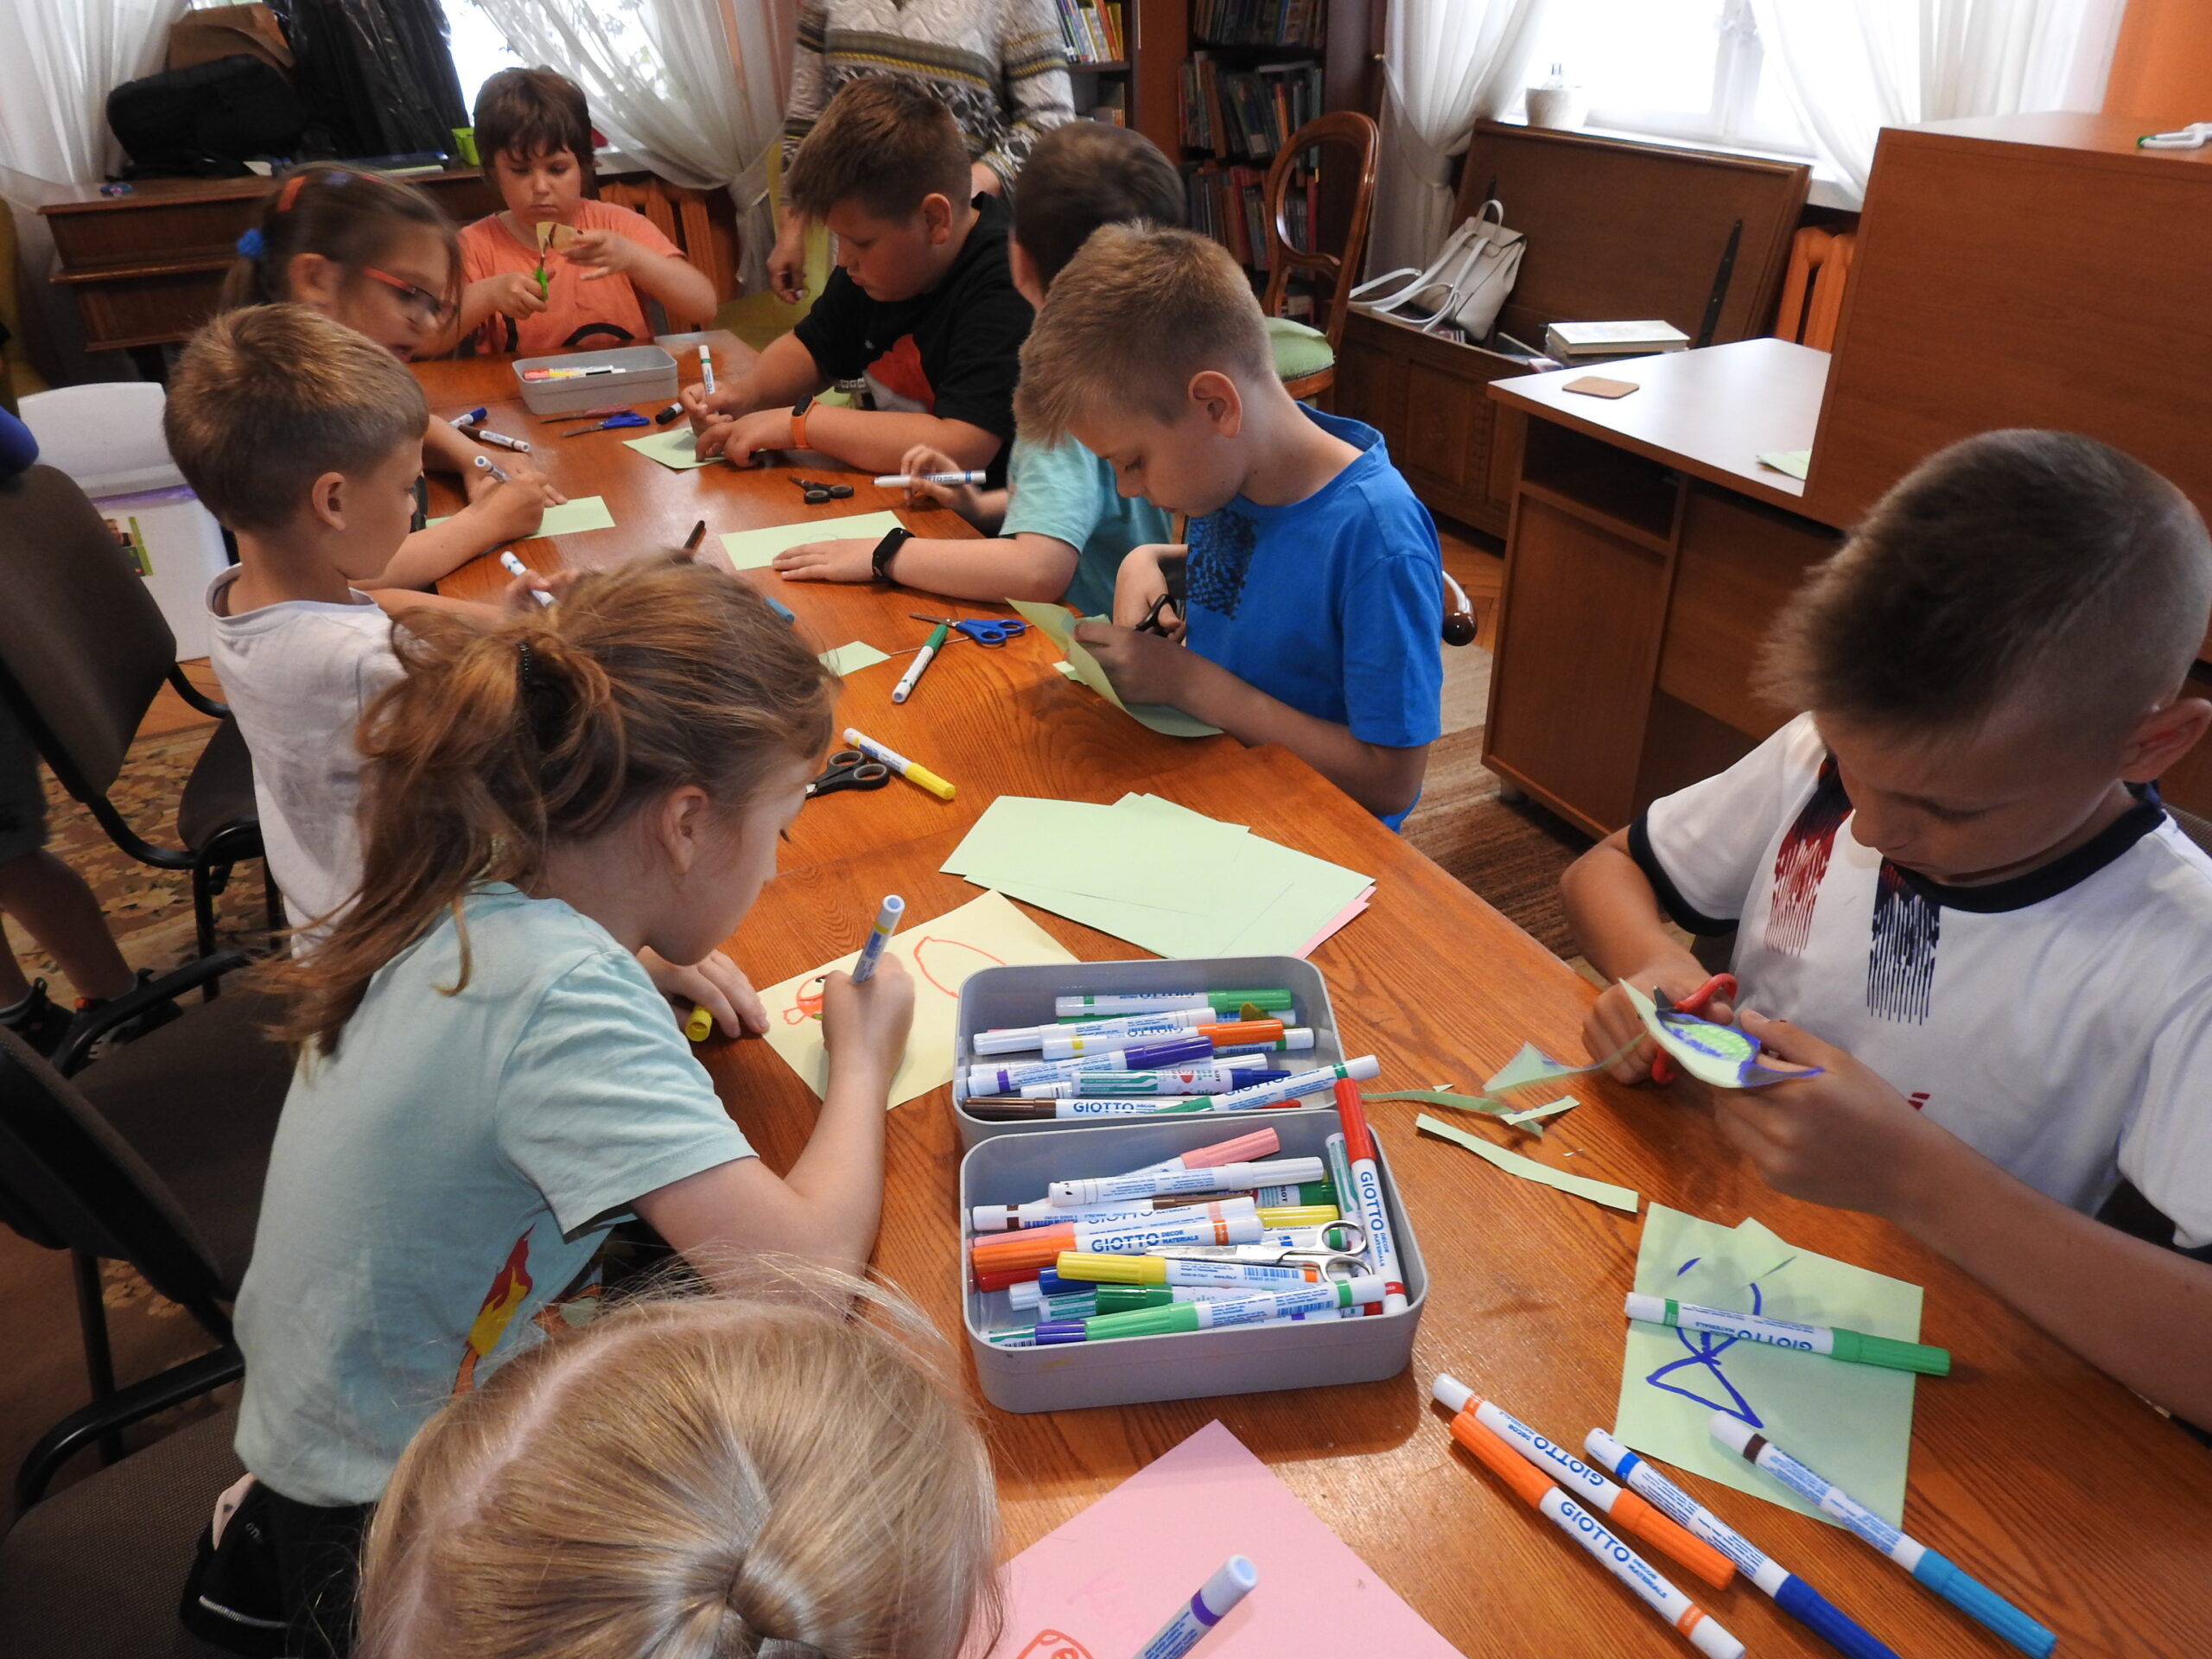 Grupa dzieci siedzi przy stole. Przed nimi, leżą kolorowe kartki oraz flamastry. Część dzieci maluje na kartkach, a część wycina.